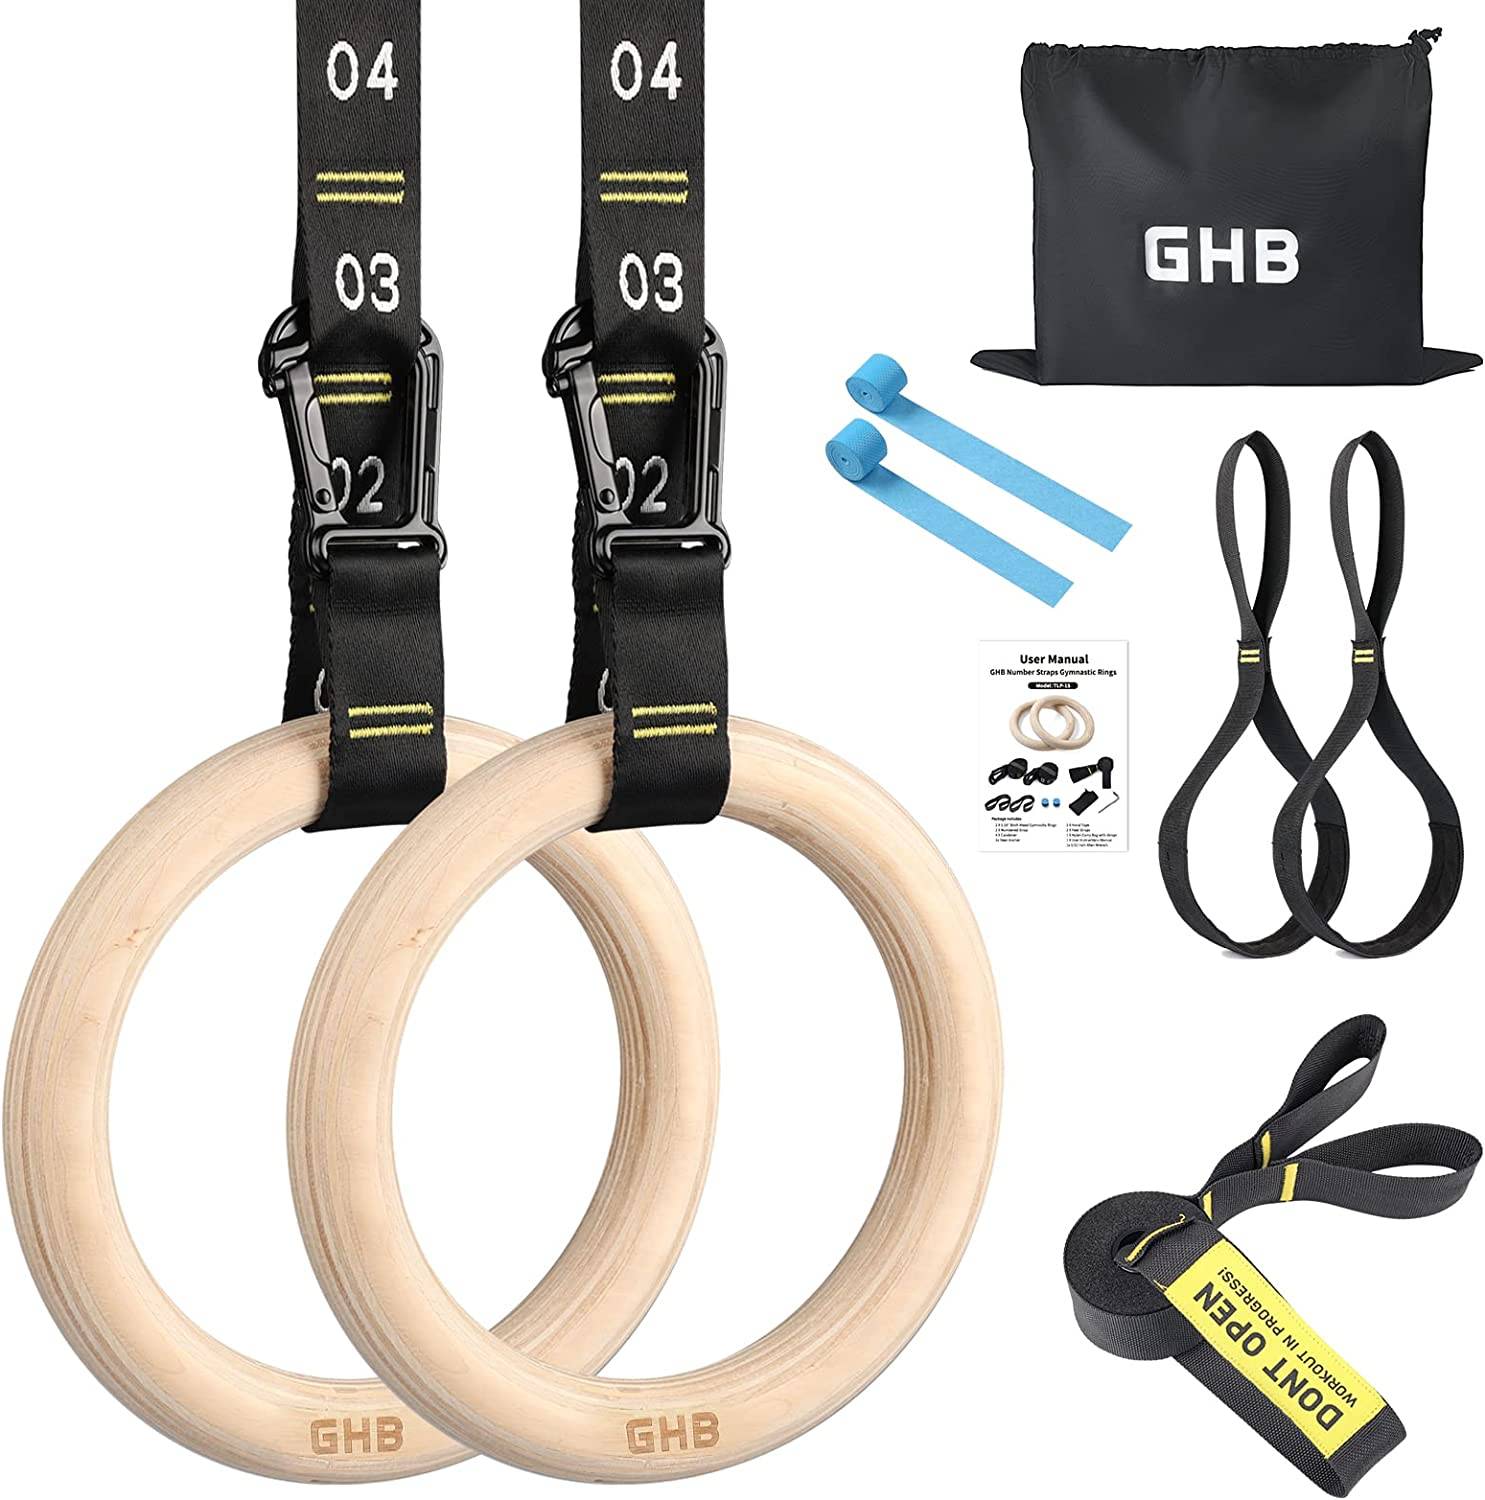  GHB Gymnastic Rings 